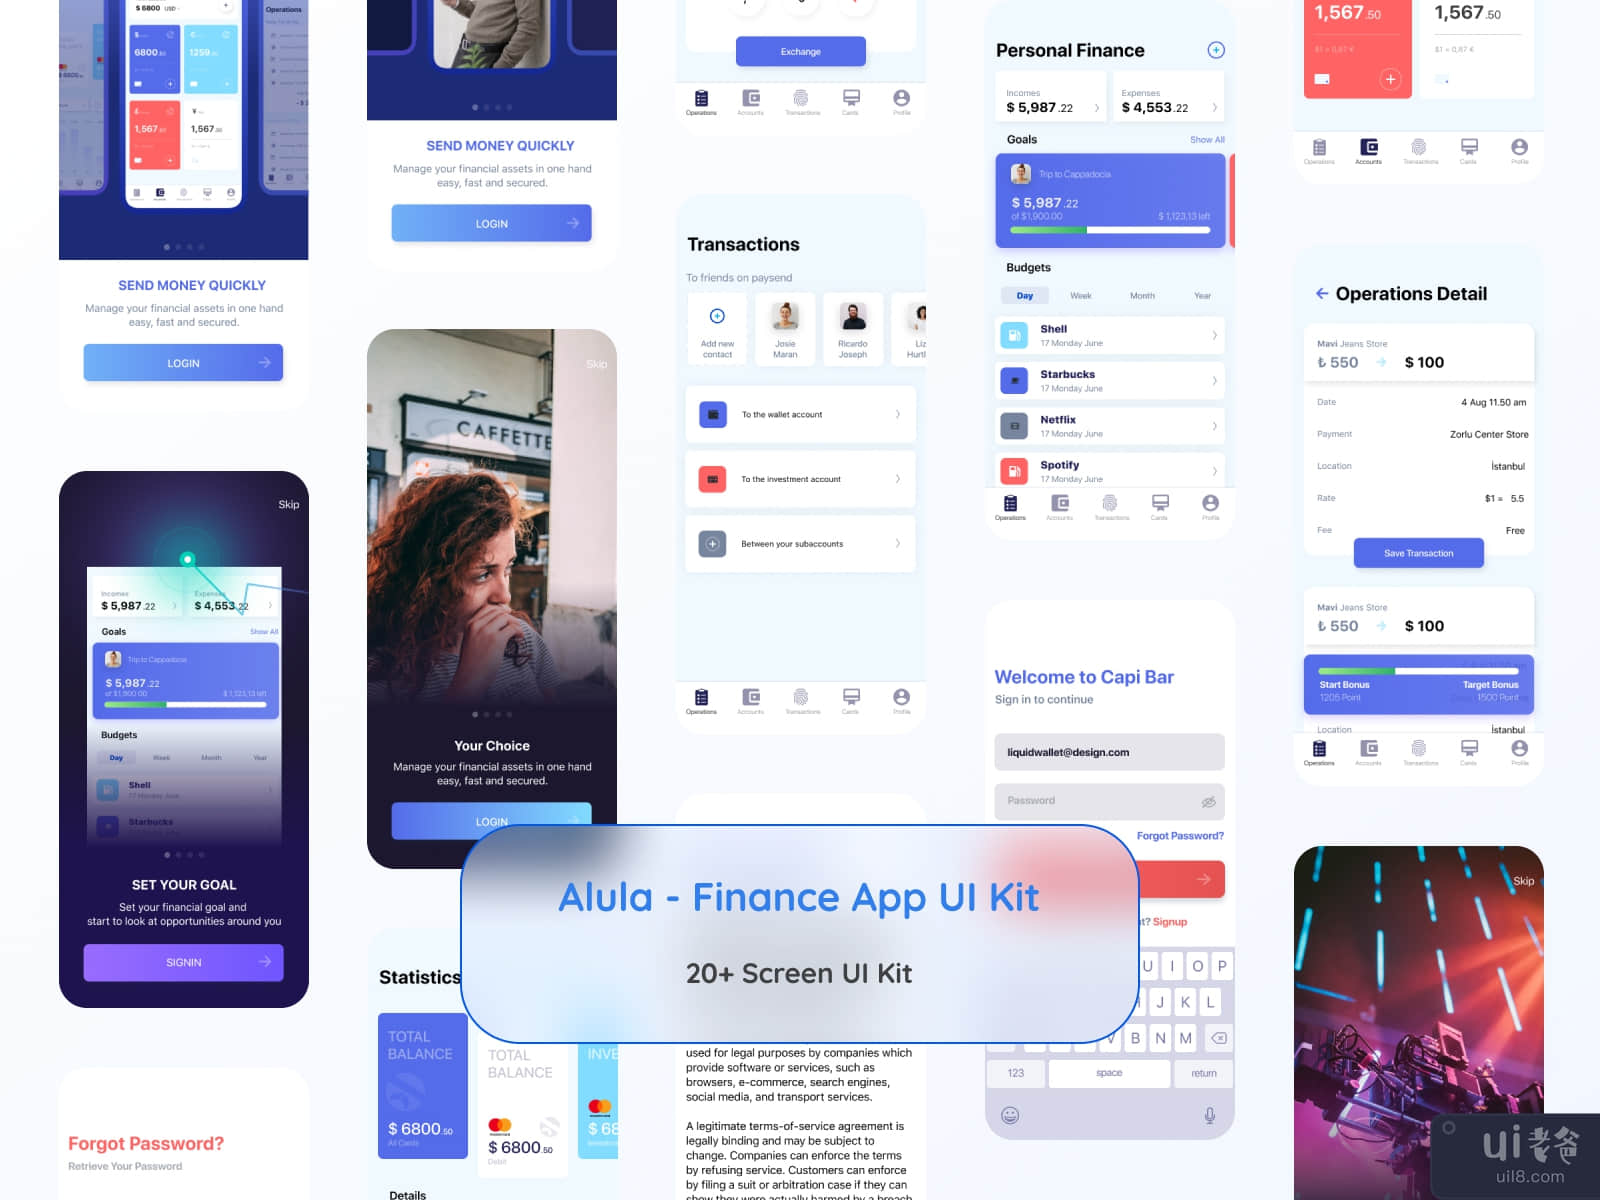 Alula - Finance App UI Kit